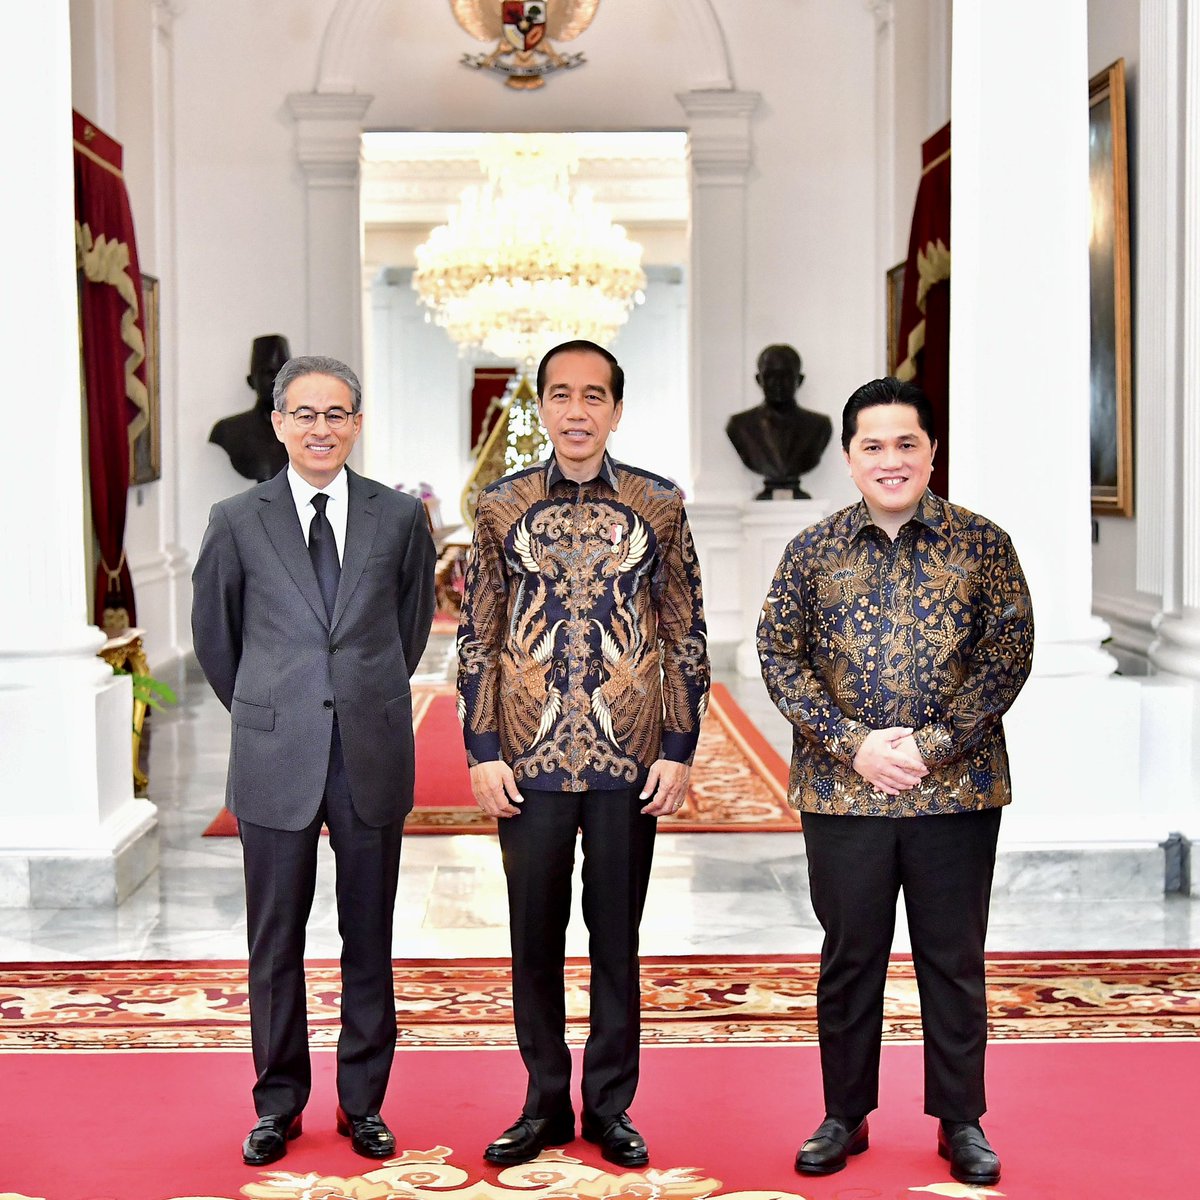 Pagi tadi, saya dan founder Emaar Properties, Mr. Mohamed Ali Rashed Alabbar, diterima Pak Presiden Jokowi di Istana Negara. 

Kami menyampaikan bahwa dua hari lalu, saya dan Mr. Alabbar mengunjungi tiga destinasi wisata favorit yakni Labuan Bajo, Mandalika, dan Kawasan Ekonomi